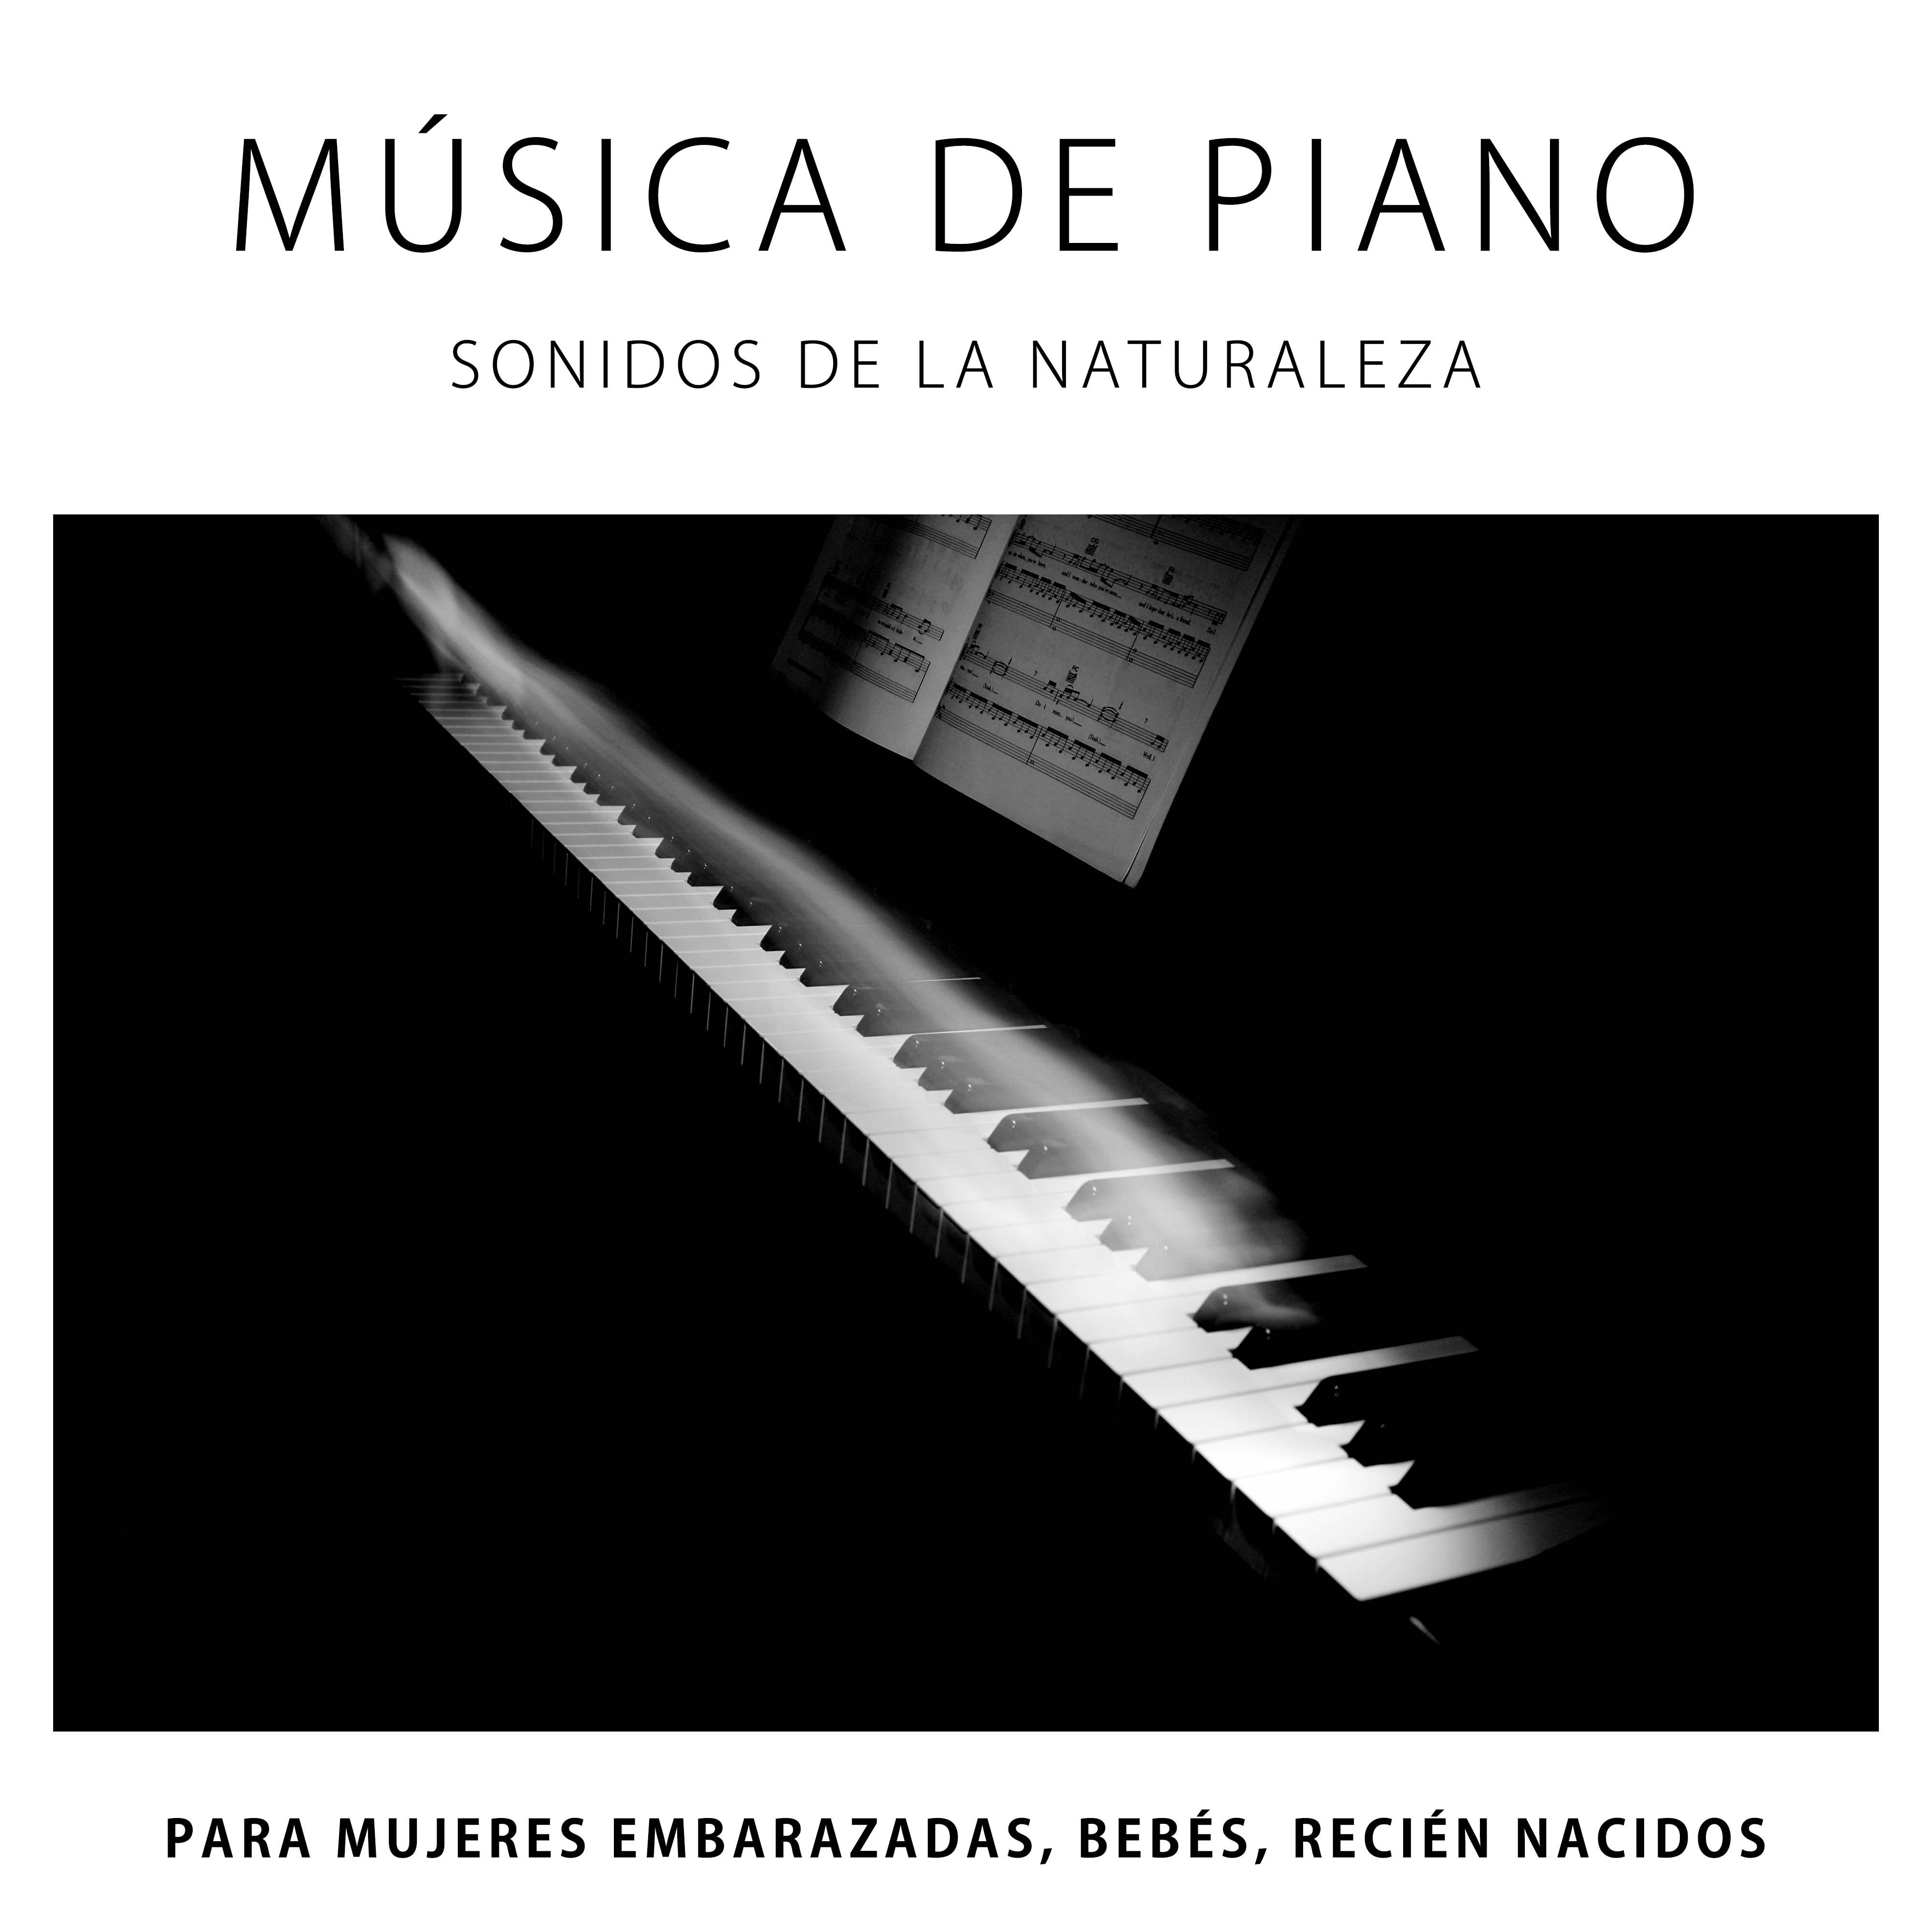 Musica de Piano, Sonidos de la Naturaleza (Lluvia, Olas del Mar) para Mujeres Embarazadas, Bebes, Recien Nacidos